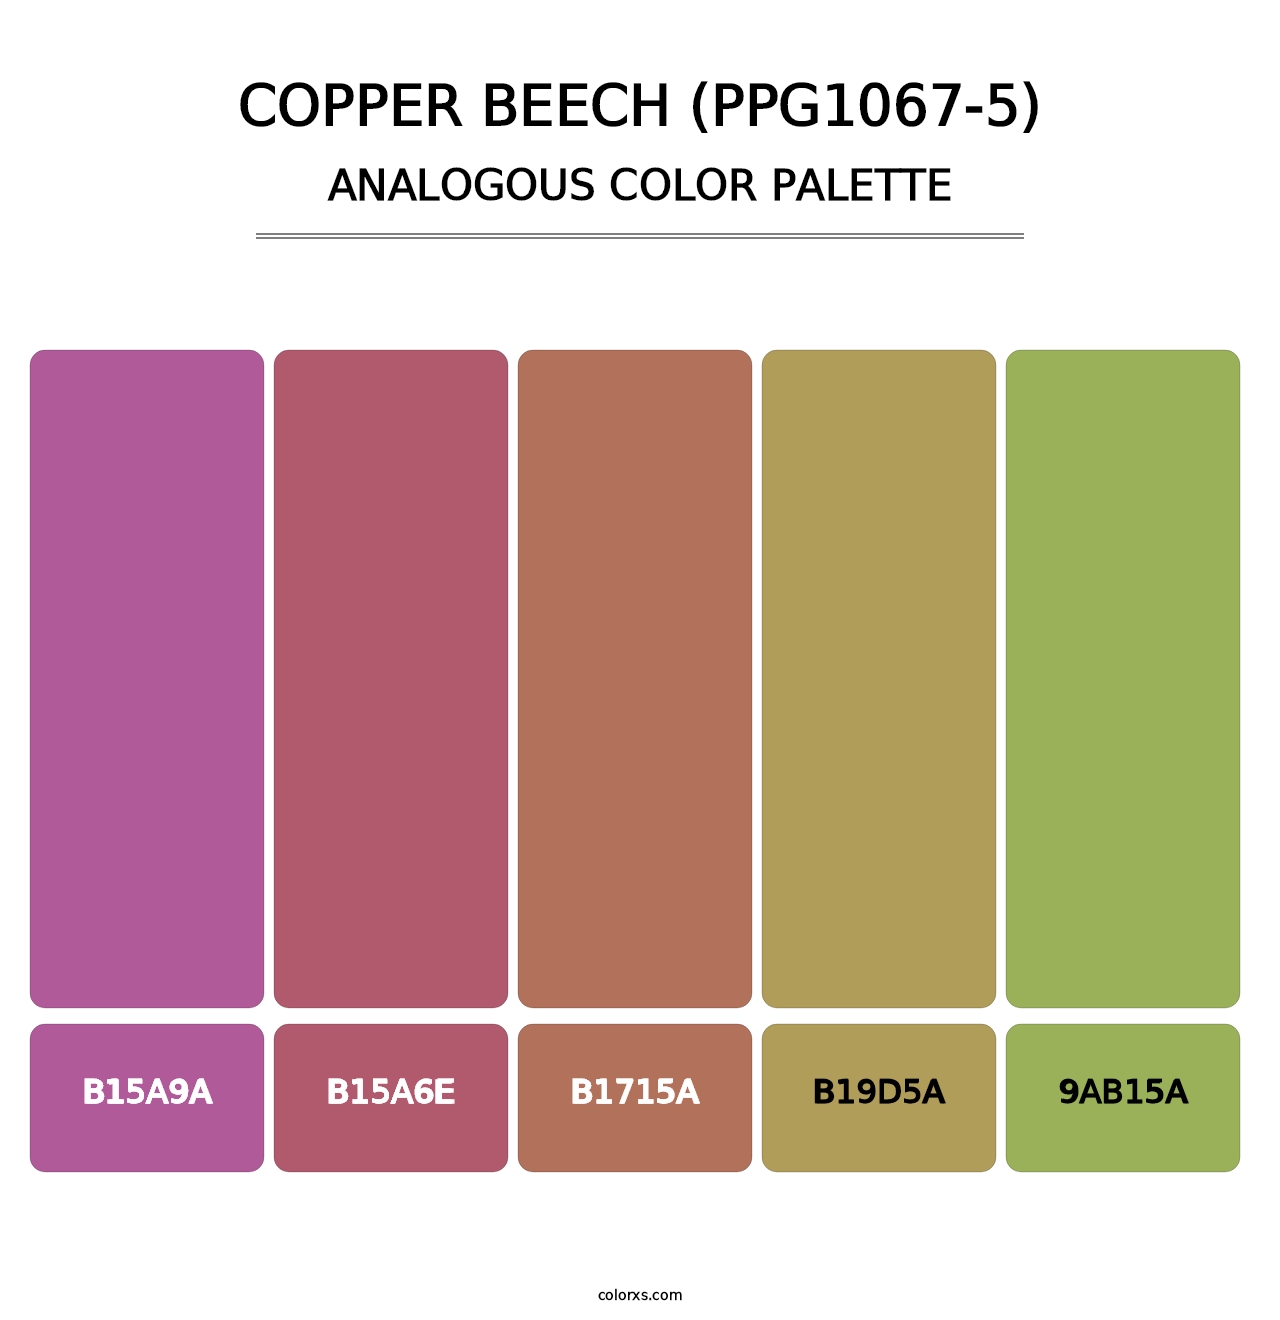 Copper Beech (PPG1067-5) - Analogous Color Palette